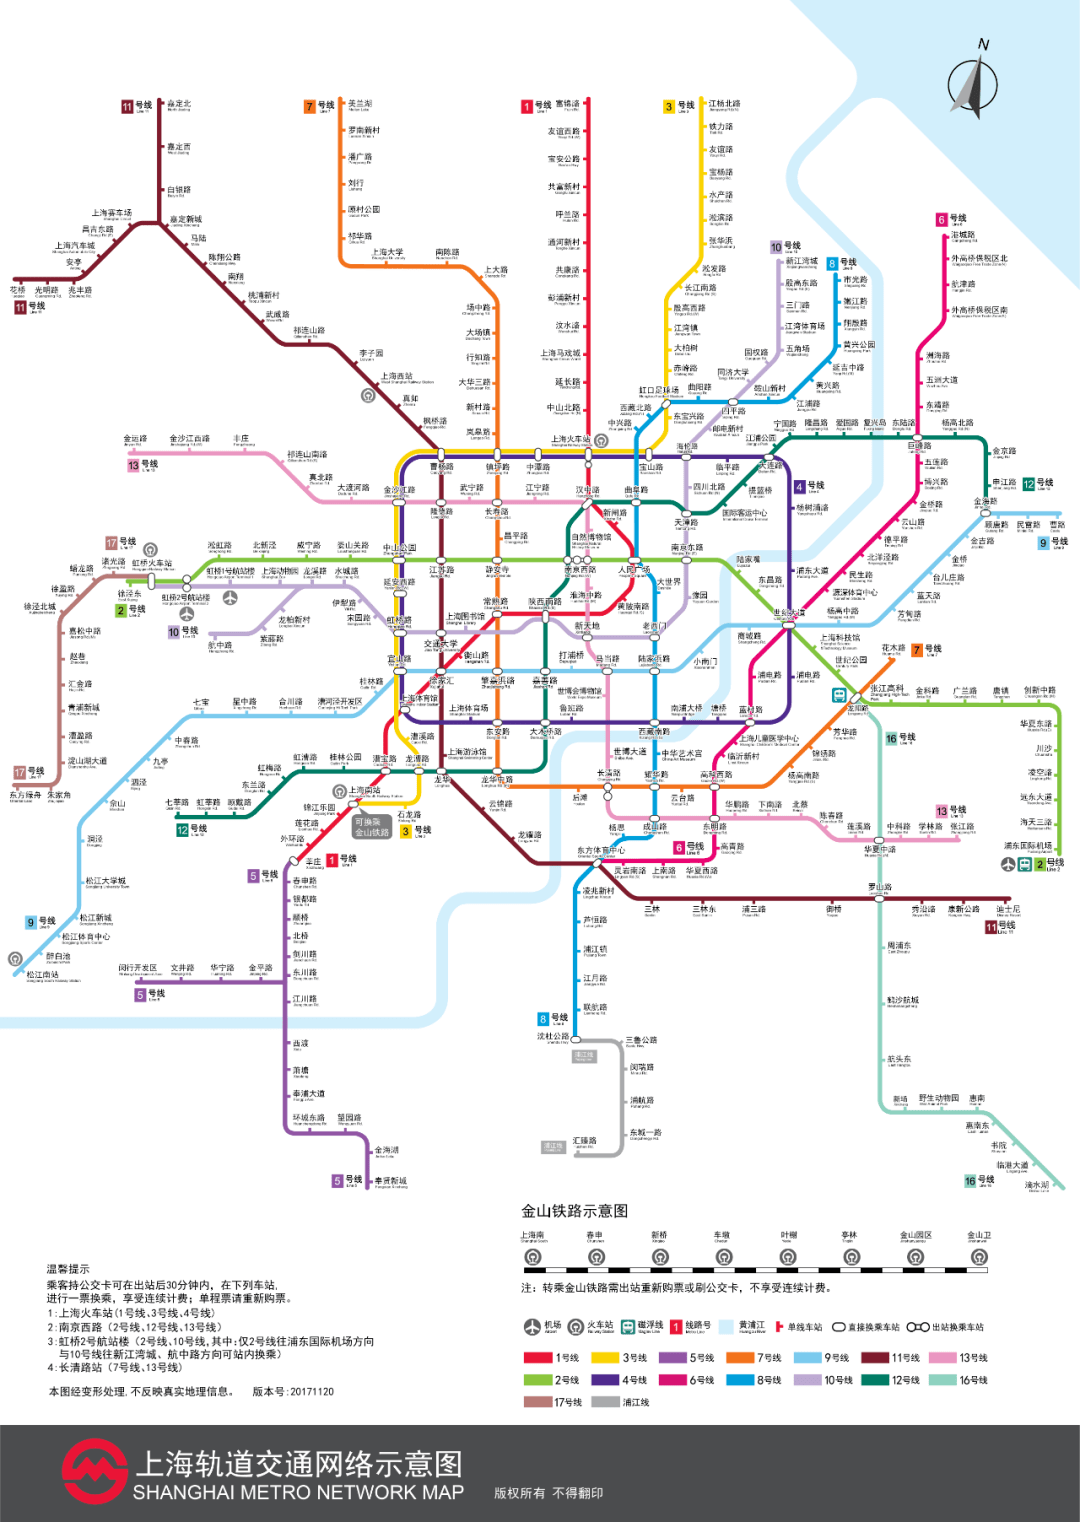 最新版上海地铁全网示意图在此!快收藏吧